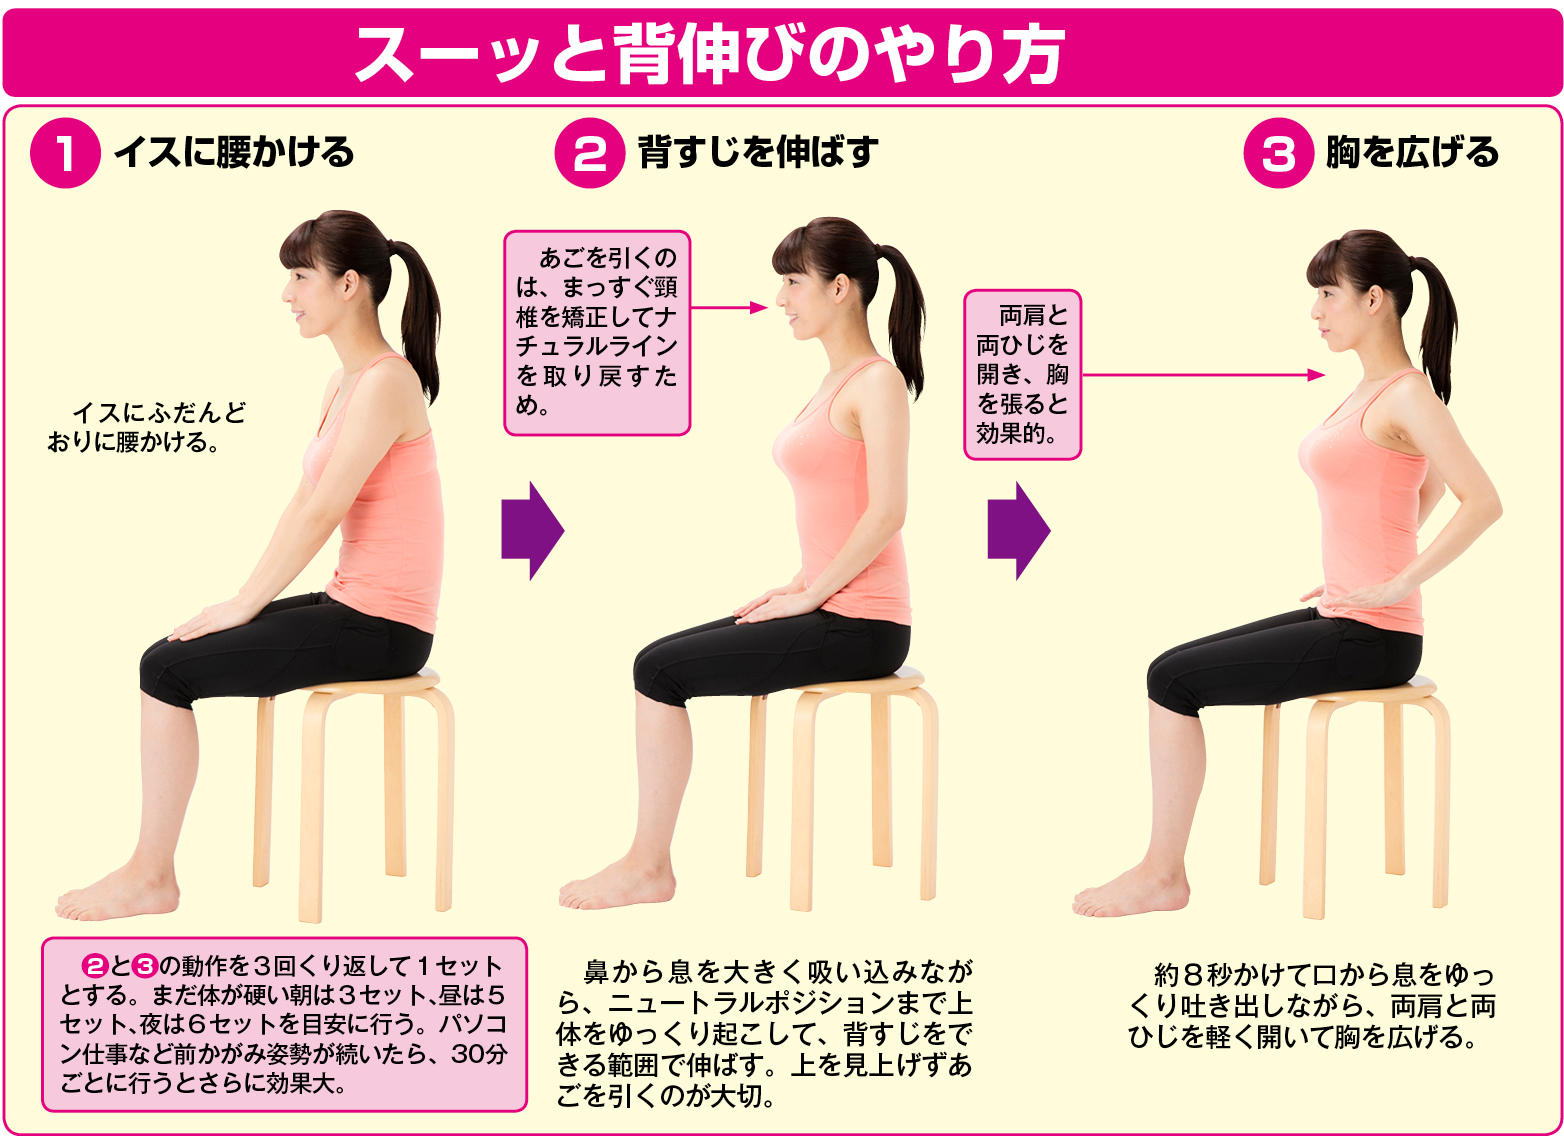 座ってできる腰痛対策 スーッと背伸び 体操を紹介 シニアガイド